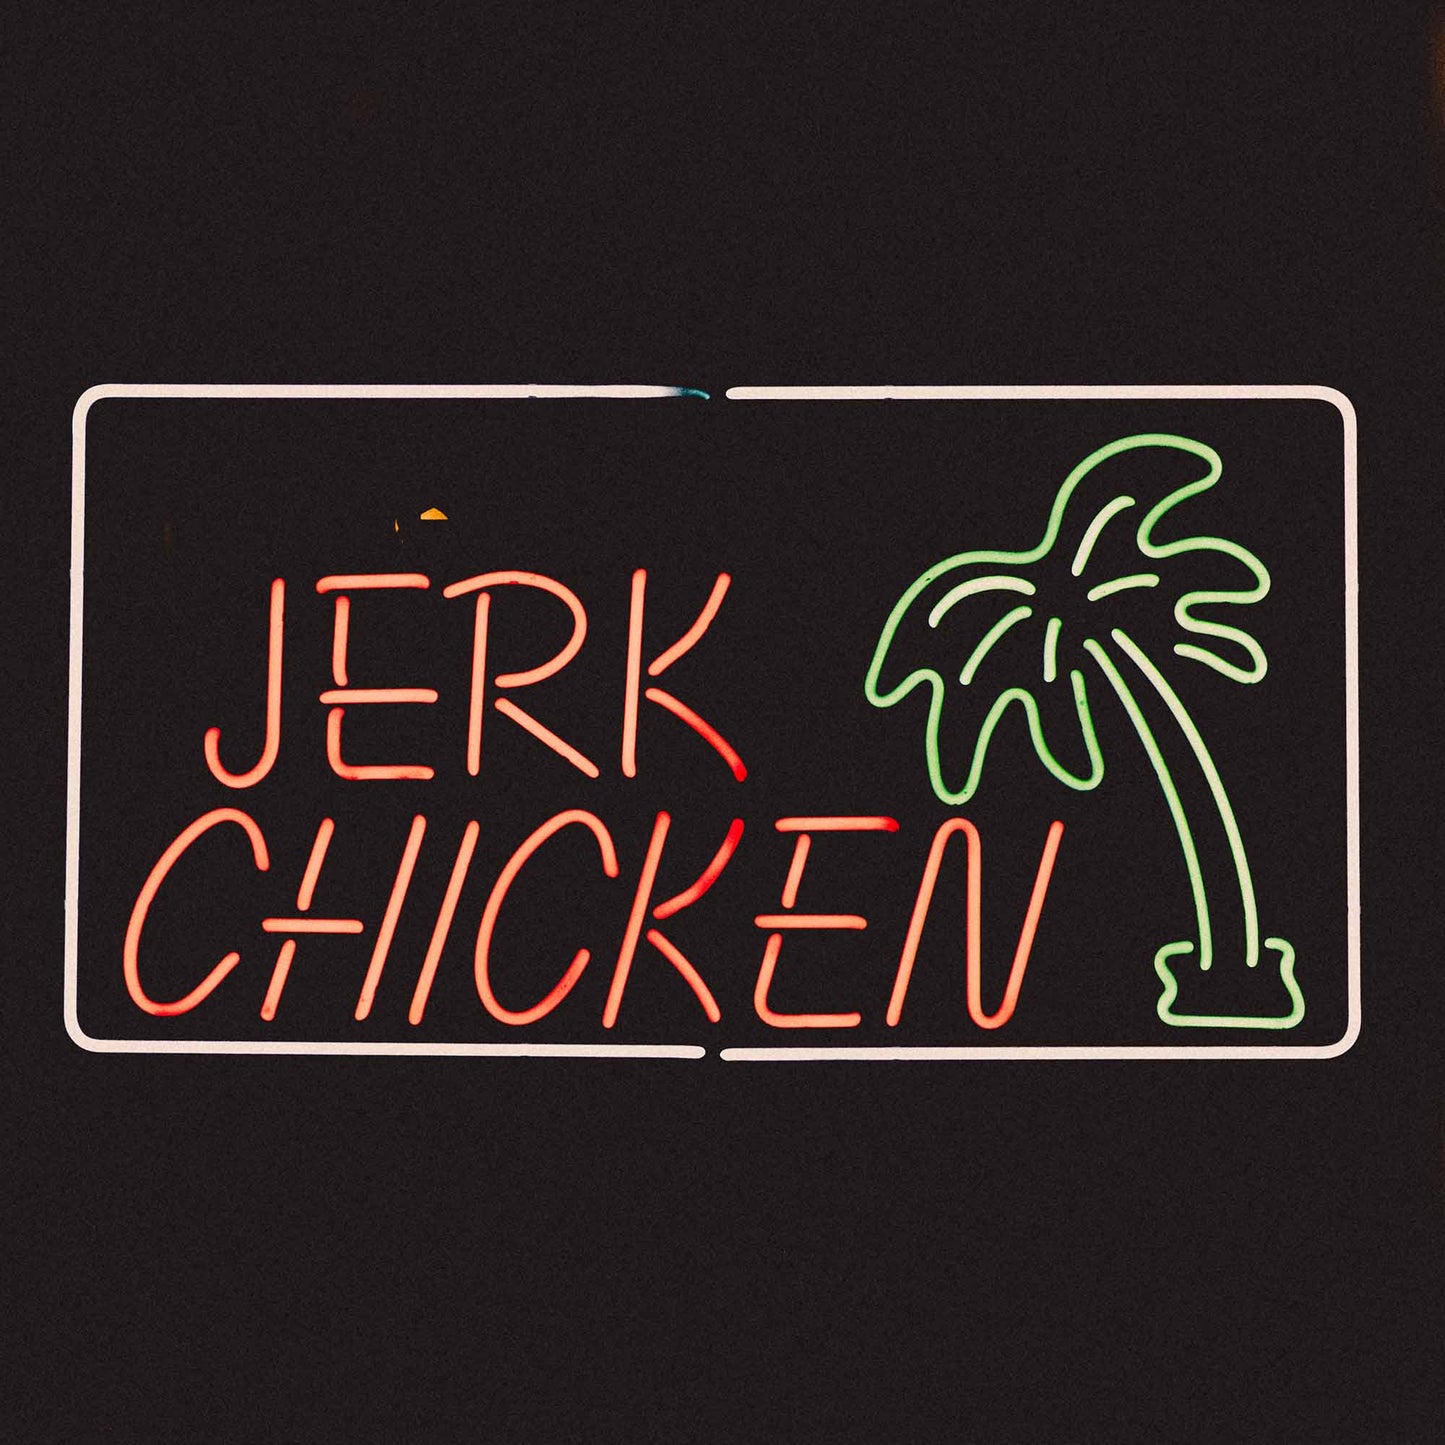 Image of jerk chicken neon sign for Caribbean restaurants London